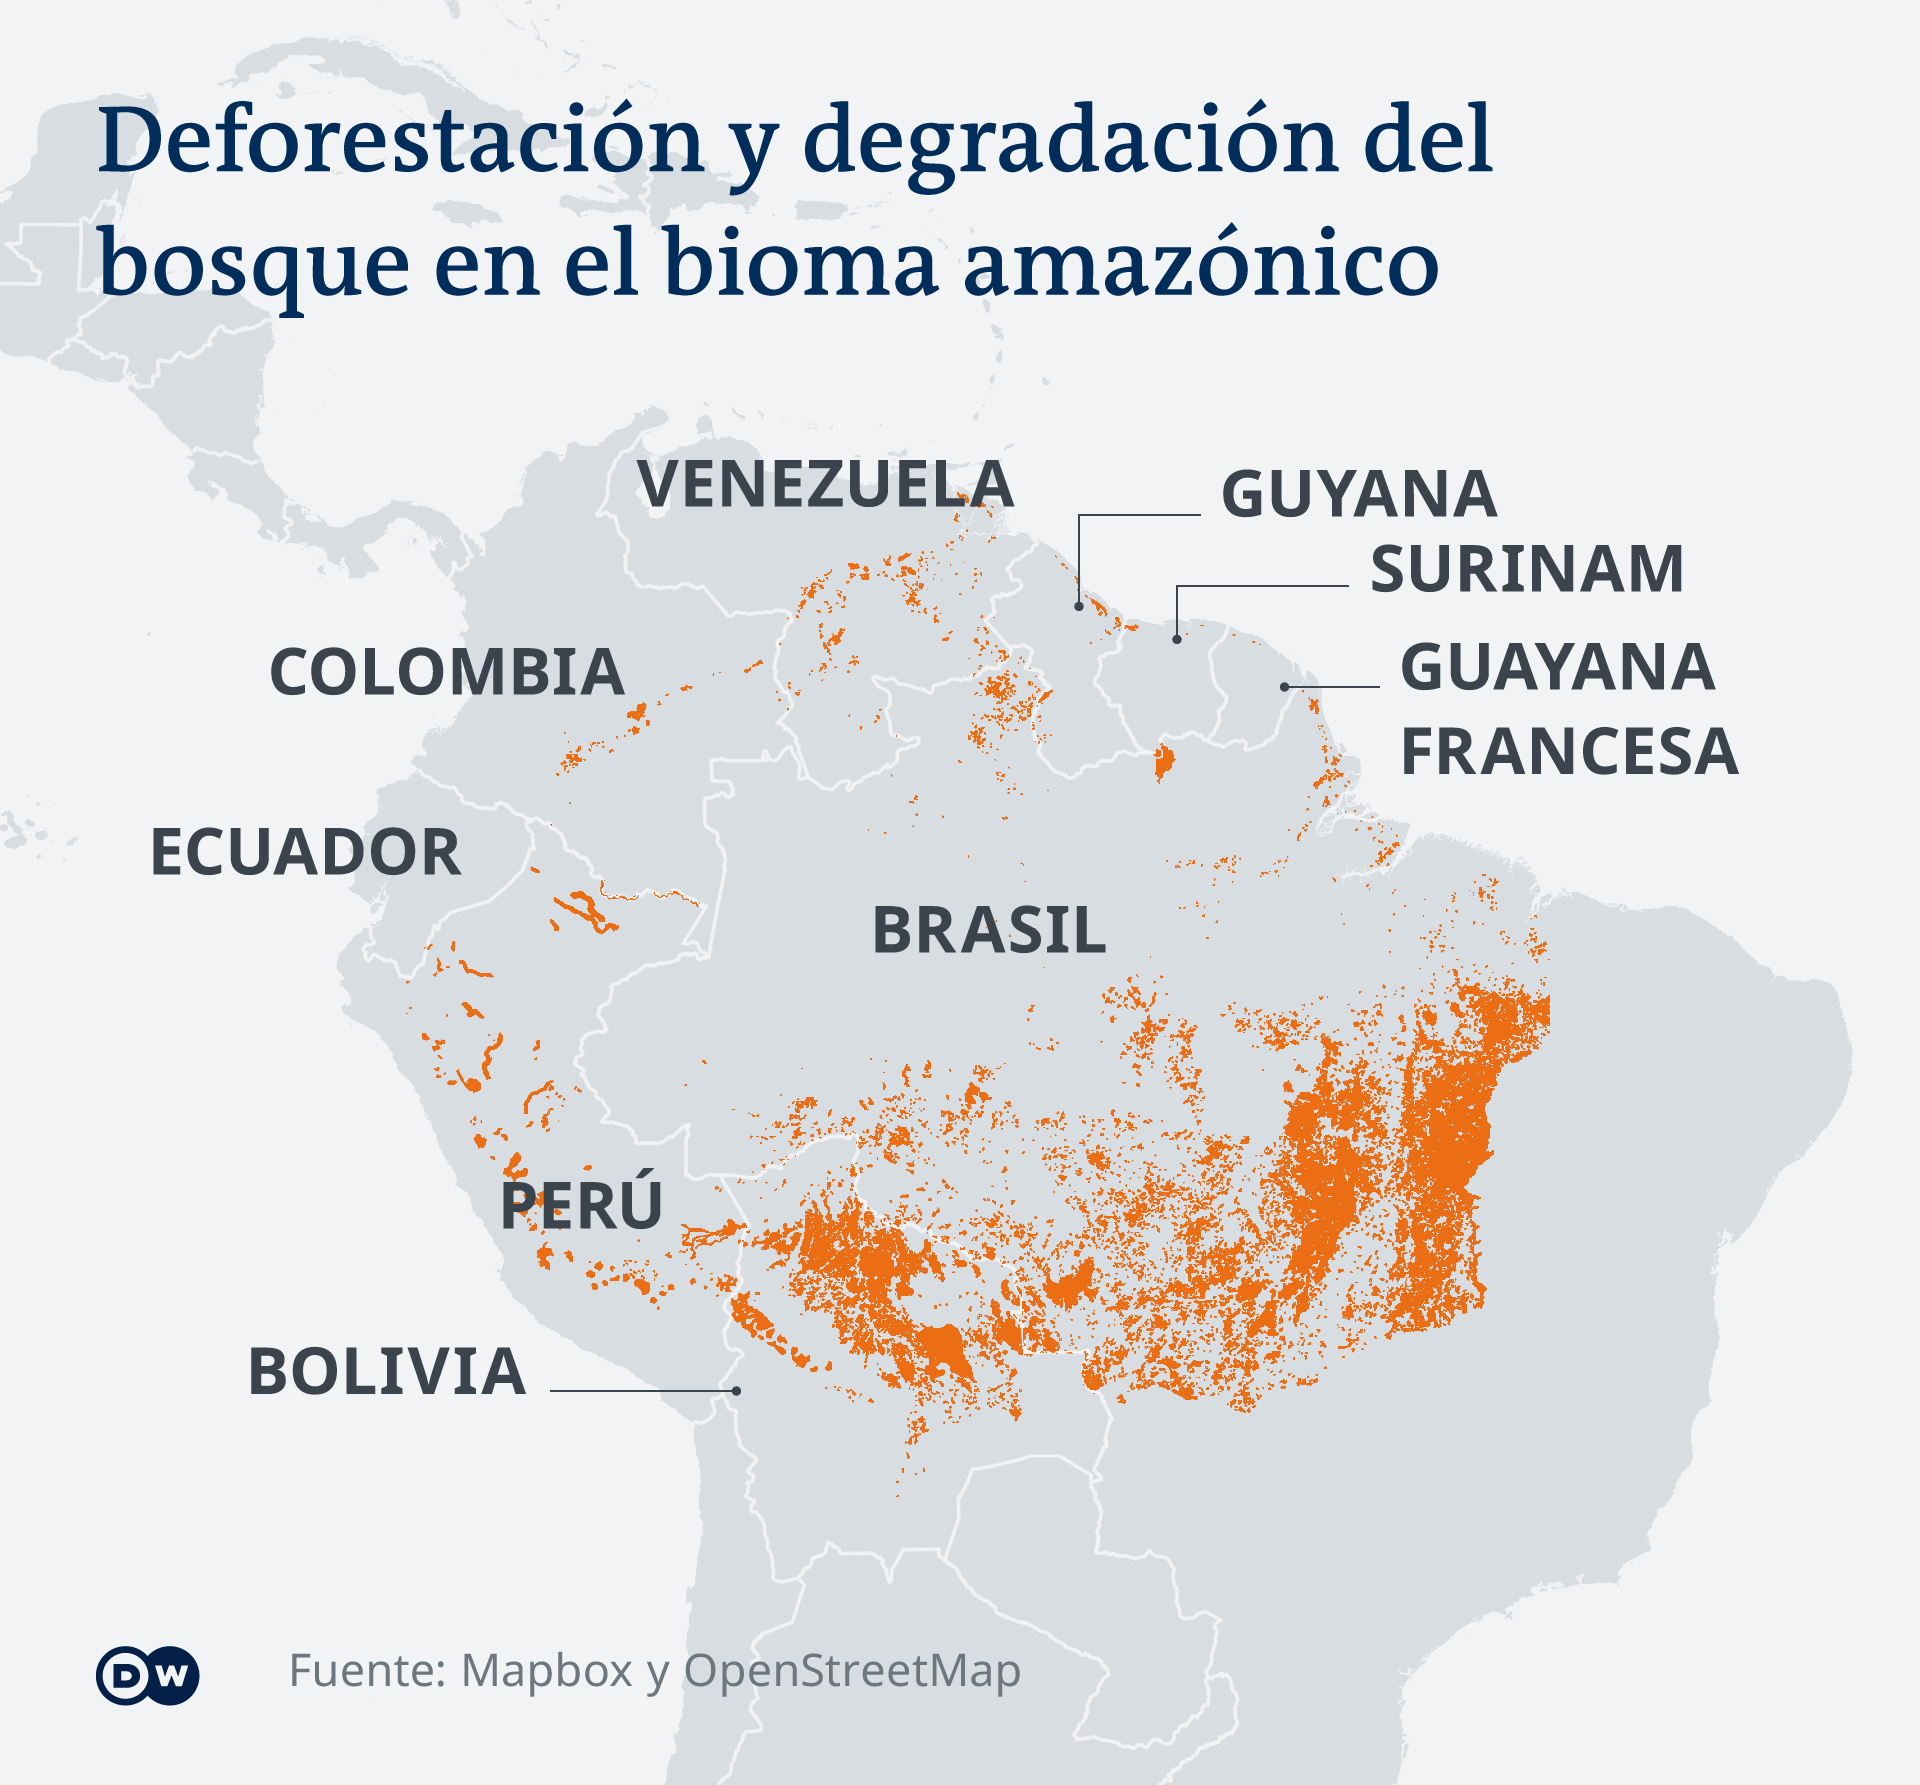 La ampliación de la frontera agrícola y ganadera, así como la minería, son algunas de las causas de la deforestación en la Amazonia